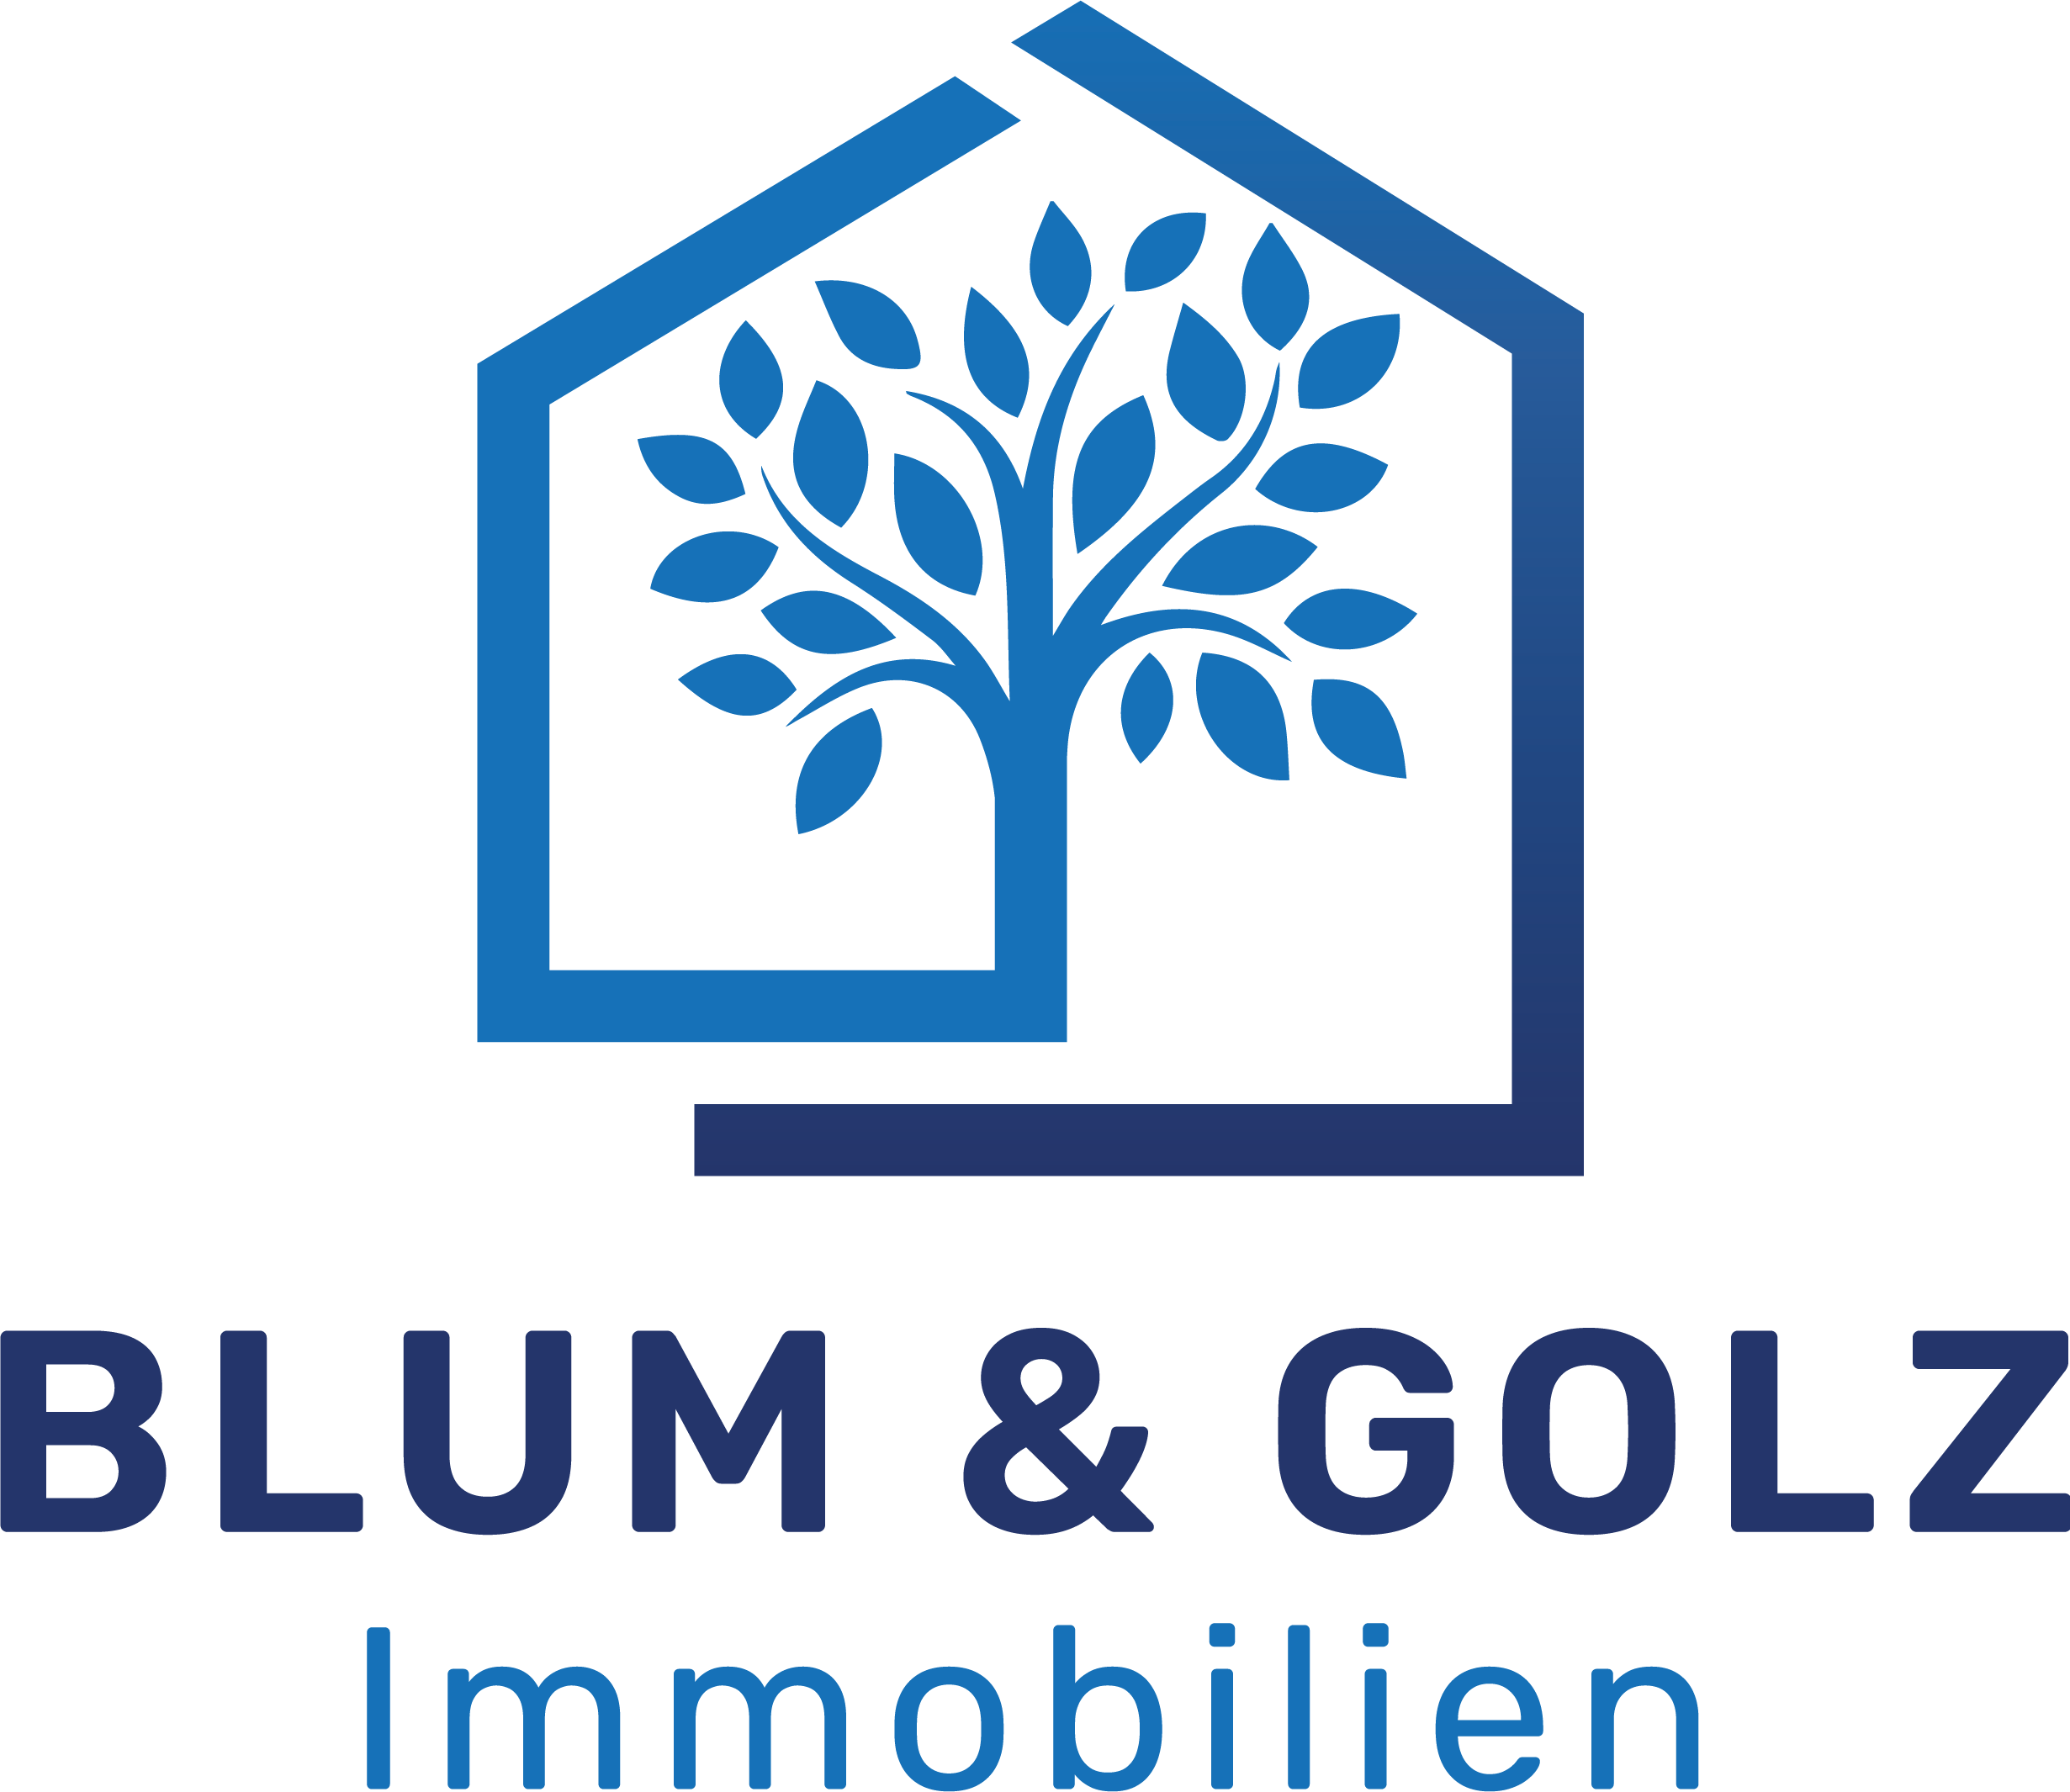 Blum & Golz Immobilien GmbH - Für eine digitale & nachhaltige Zukunft